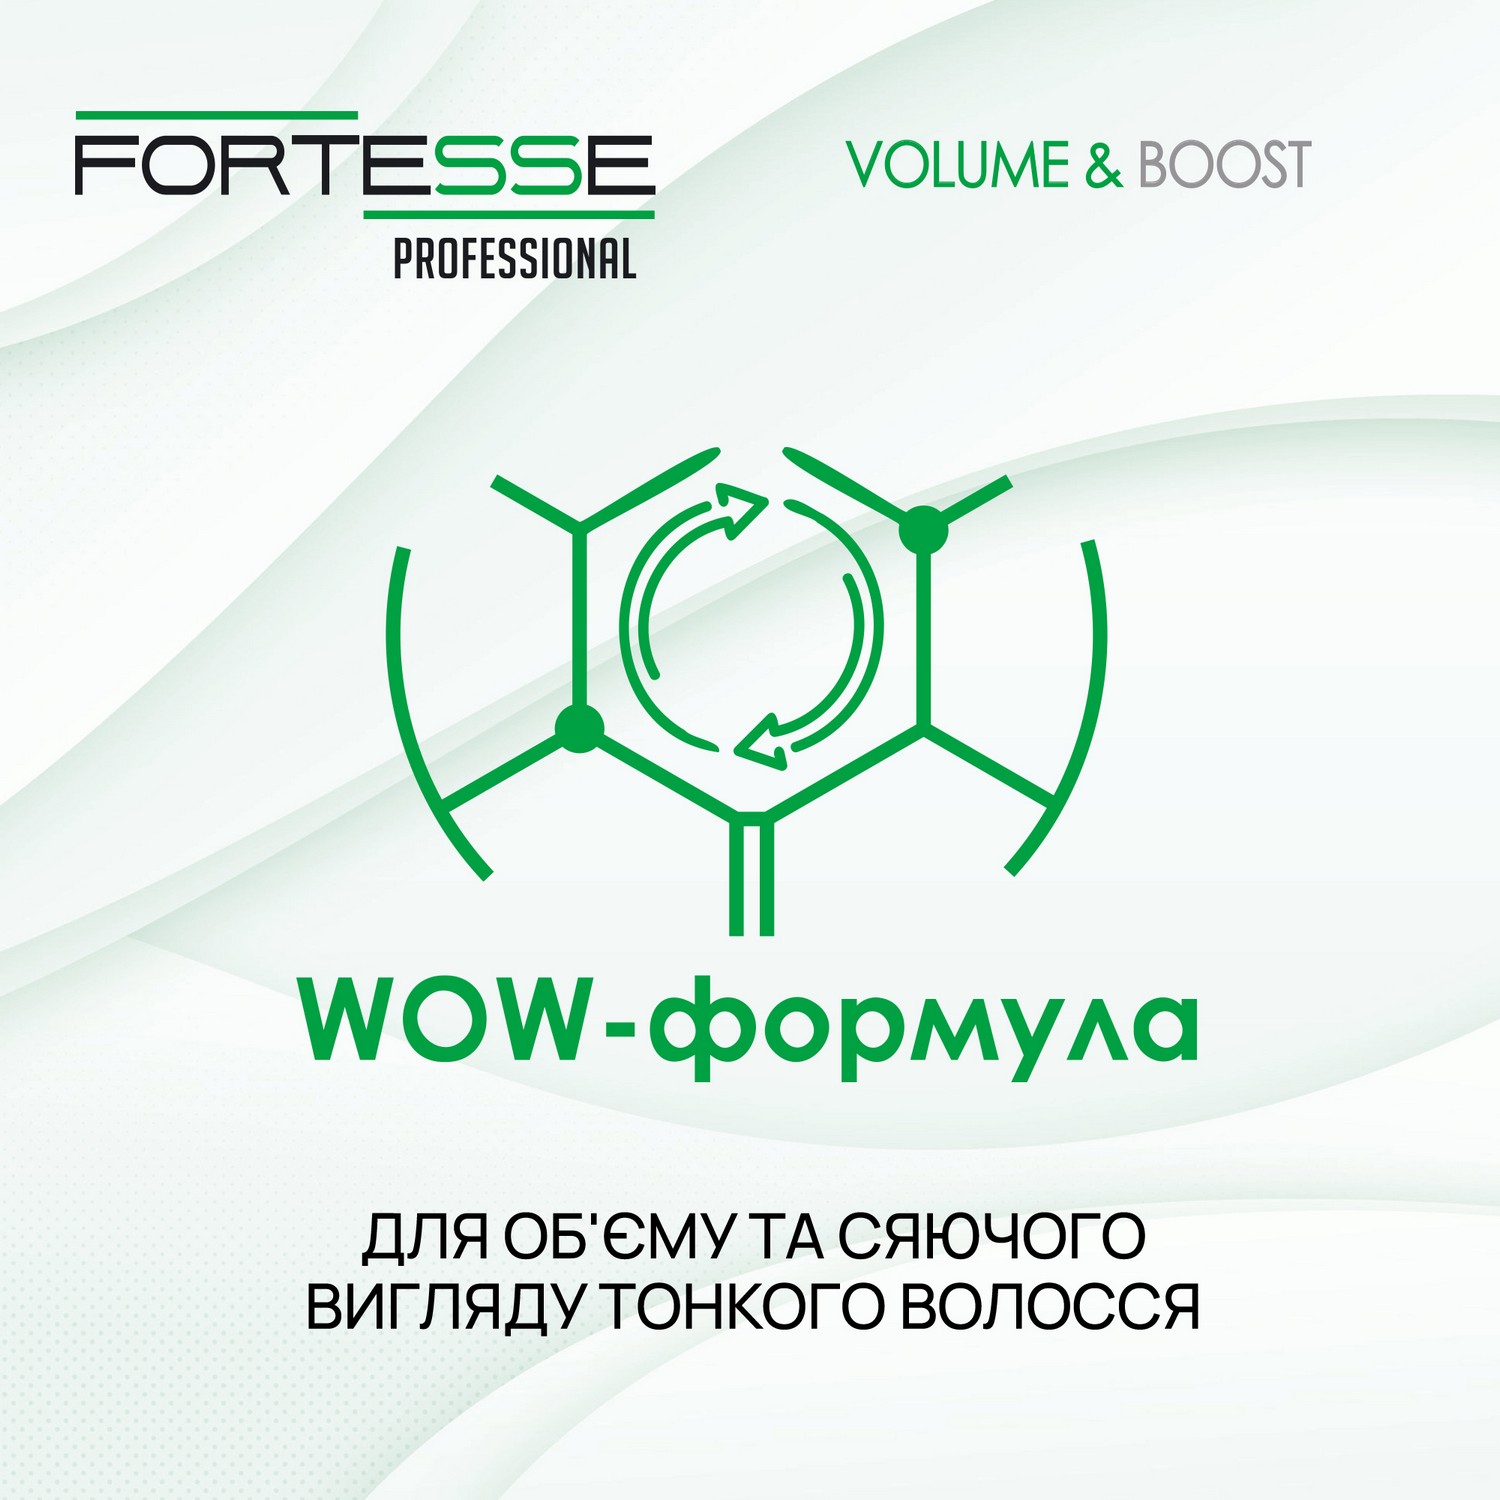 Шампунь Fortesse Professional Volume & Boost Об'єм, для тонкого волосся, 400 мл - фото 5